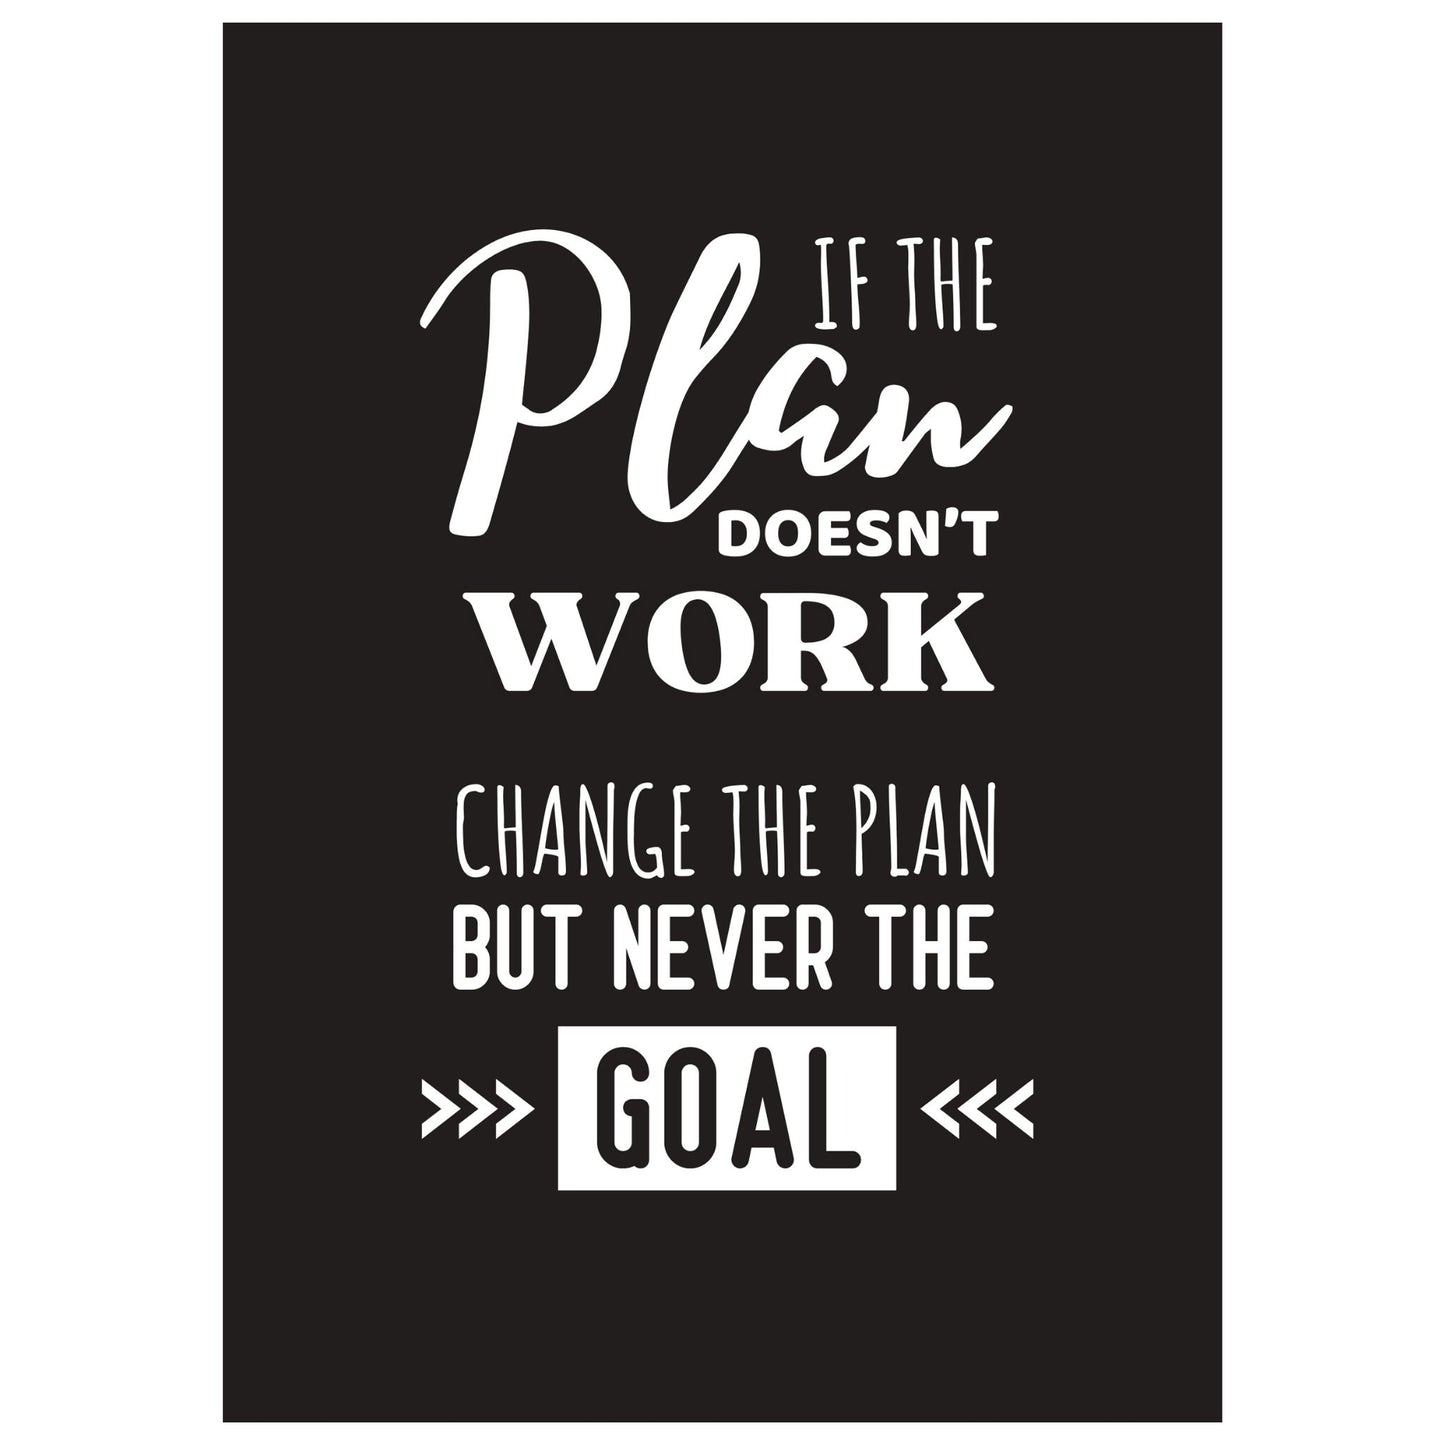 Grafisk tekstplakat med hvit skrift på sortbakgrunn og tekst "If the plan doesn't work, change the plan but never the goal". I